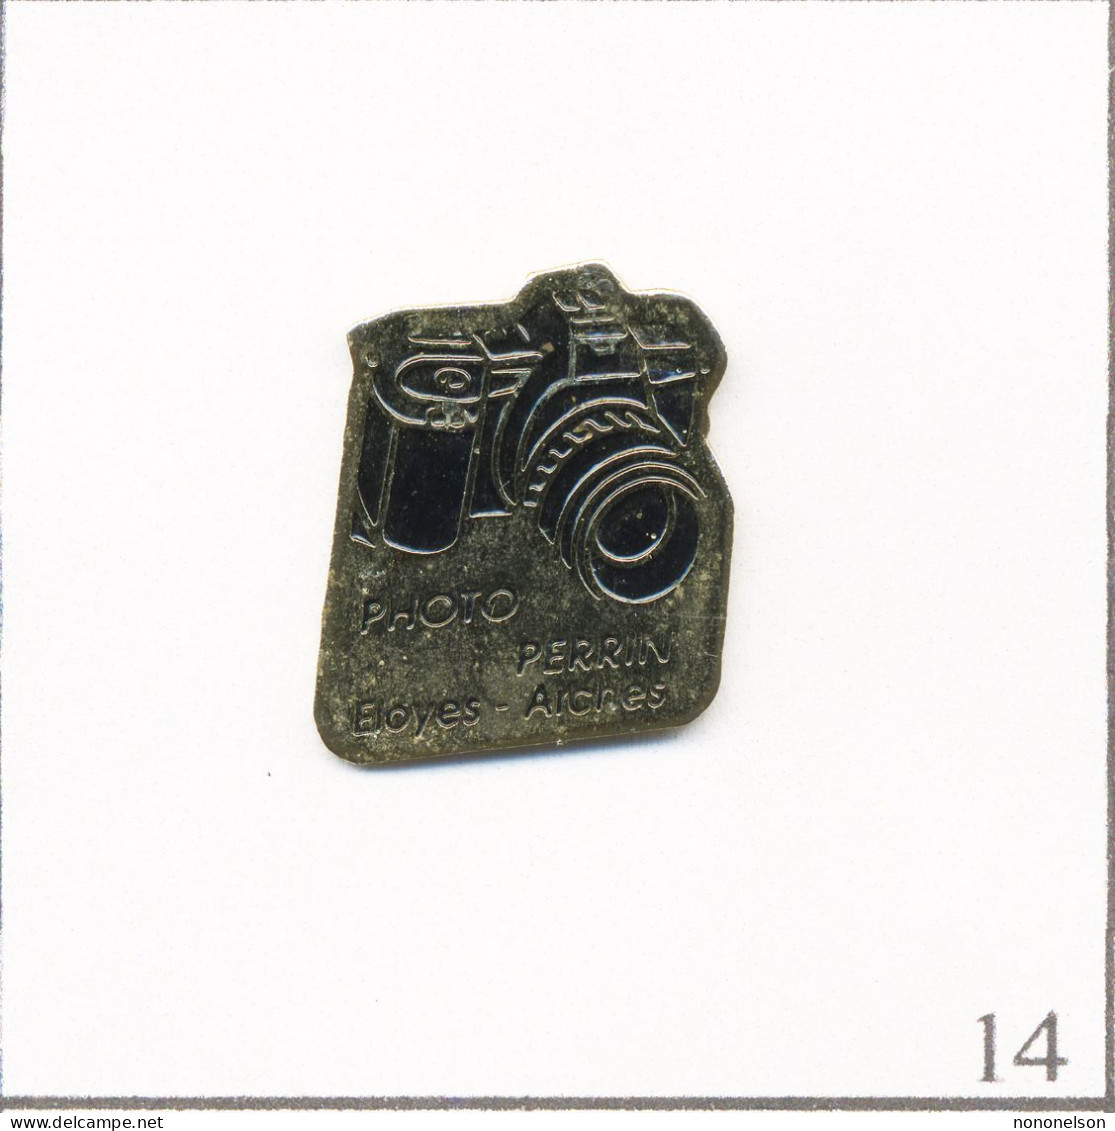 Pin's Photographie - Magasin / Photo Perrin à Eloyes & Arches (88). Estampillé PubliNancy. Métal Peint. T667-14 - Photographie